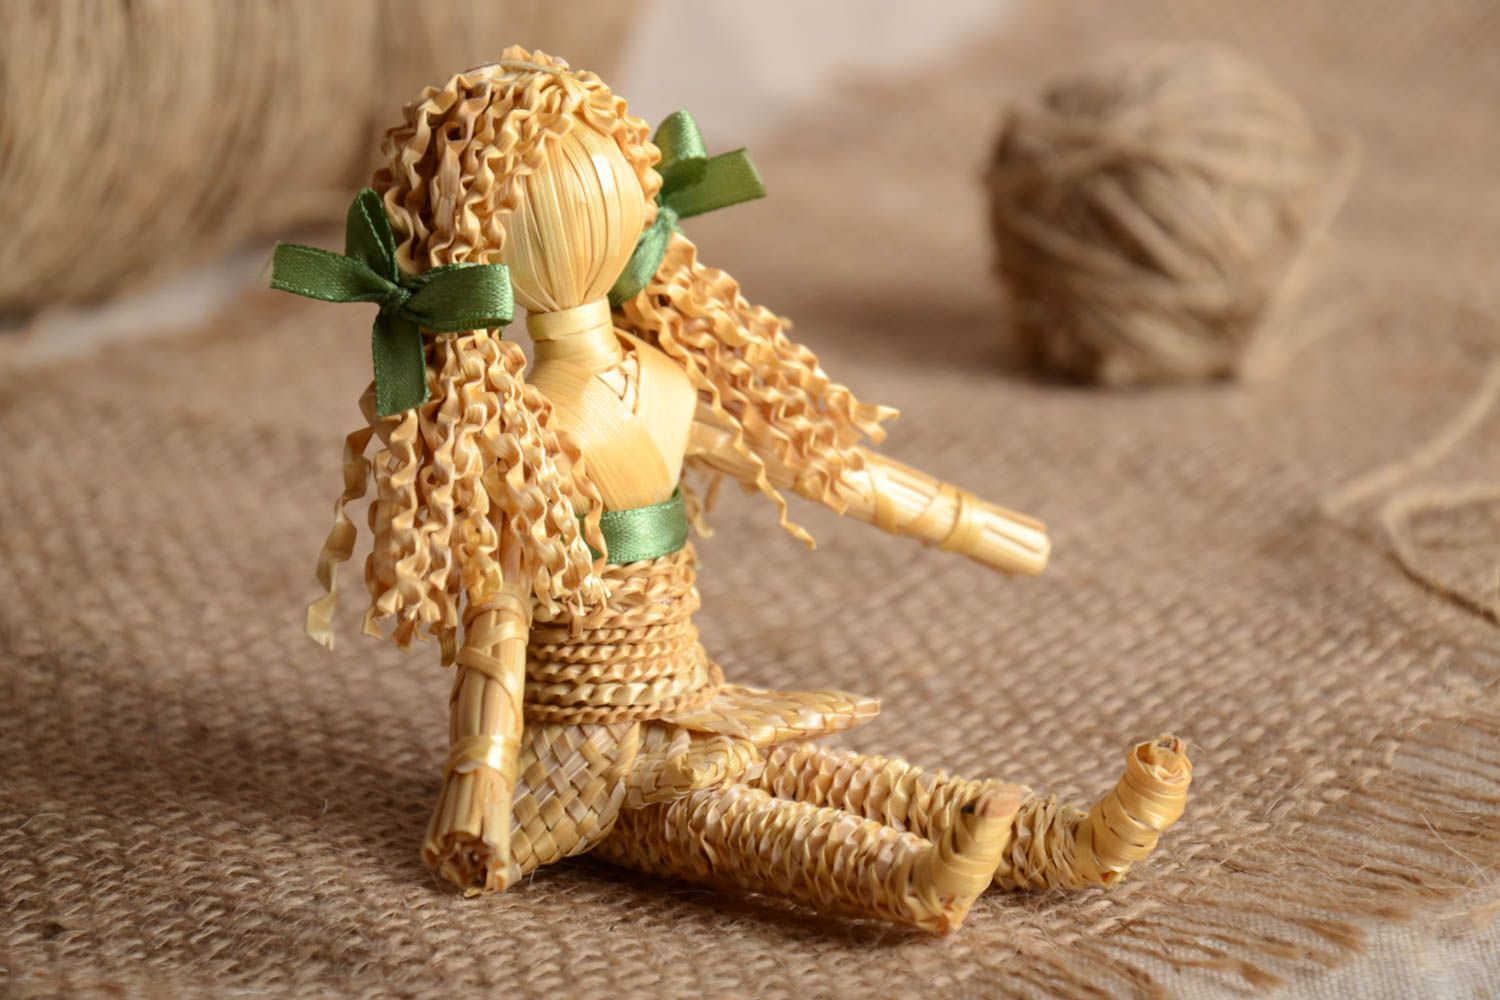 Интерьерная игрушка плетеная из соломы ручной работы оригинальная авторская фото 1